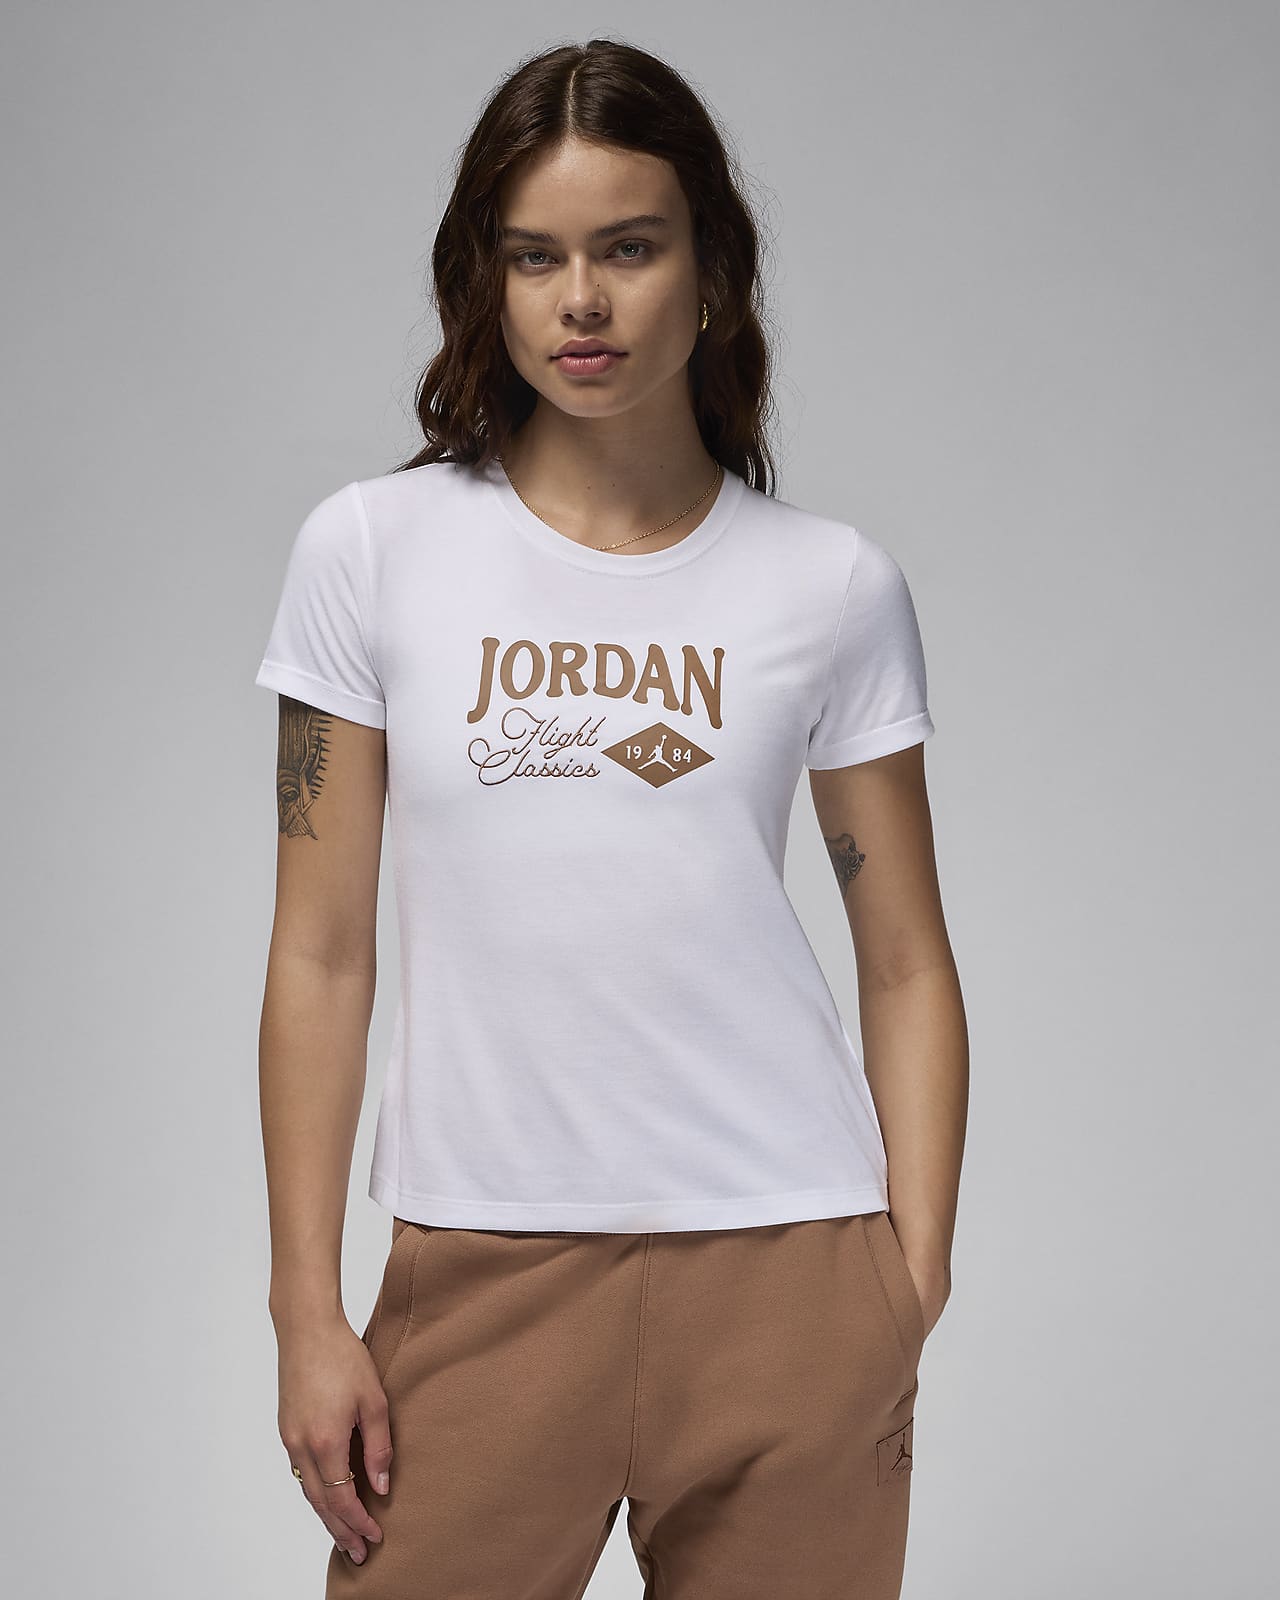 T-shirt Girlfriend avvolgente Jordan – Donna